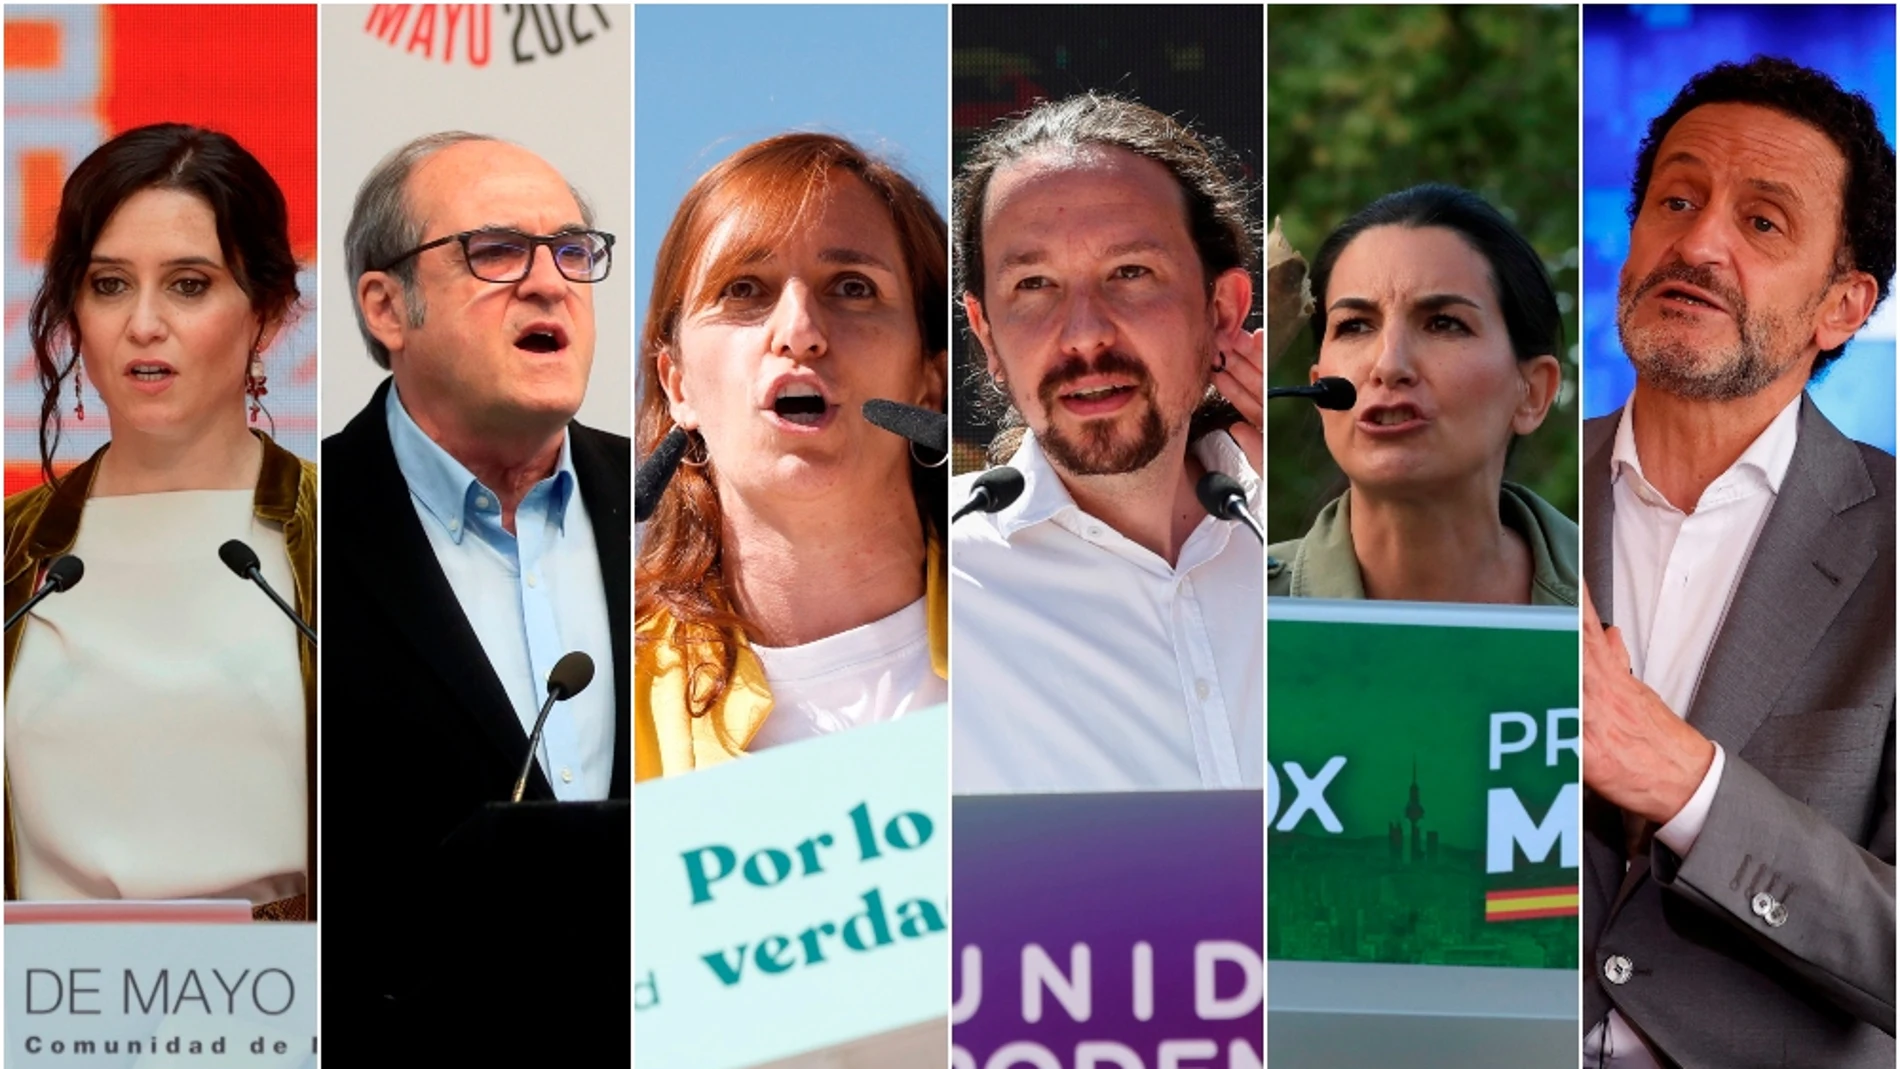 Los candidatos a la presidencia de la Comunidad de Madrid en las elecciones del 4 de mayo